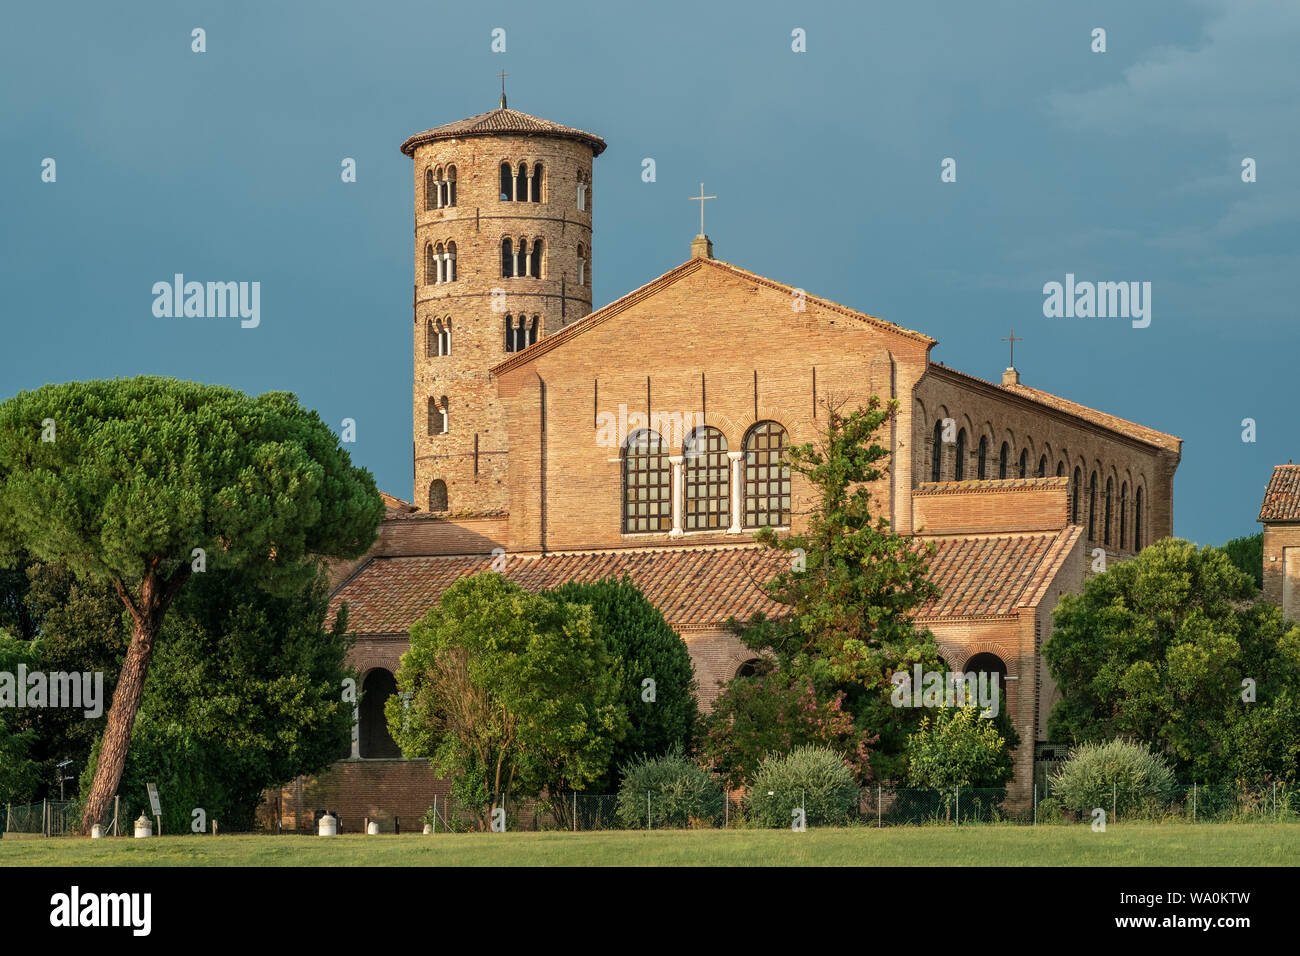 Saint Apollinare in Classe, basilique avec la tour clocher, Ravenne, Italie. Banque D'Images